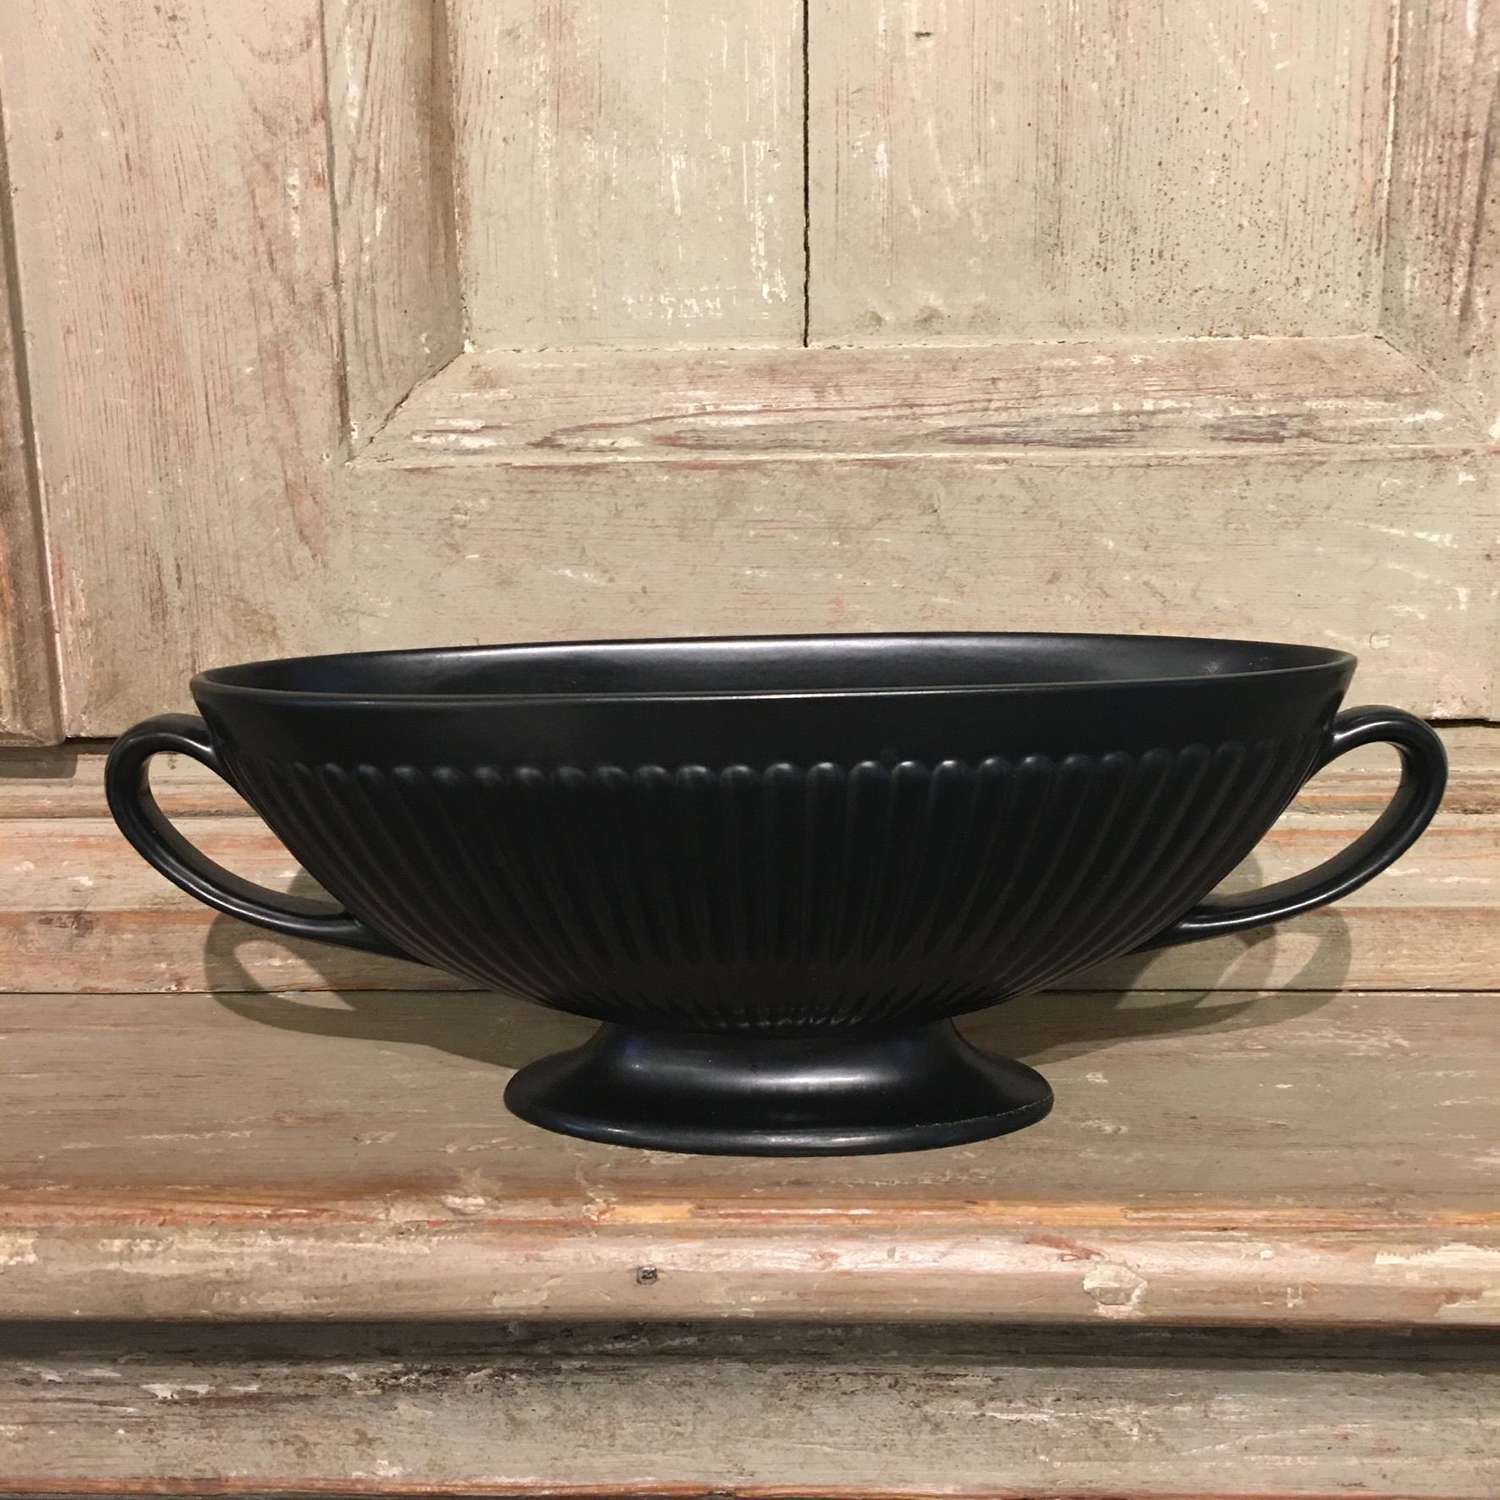 Vintage black Wedgwood urn